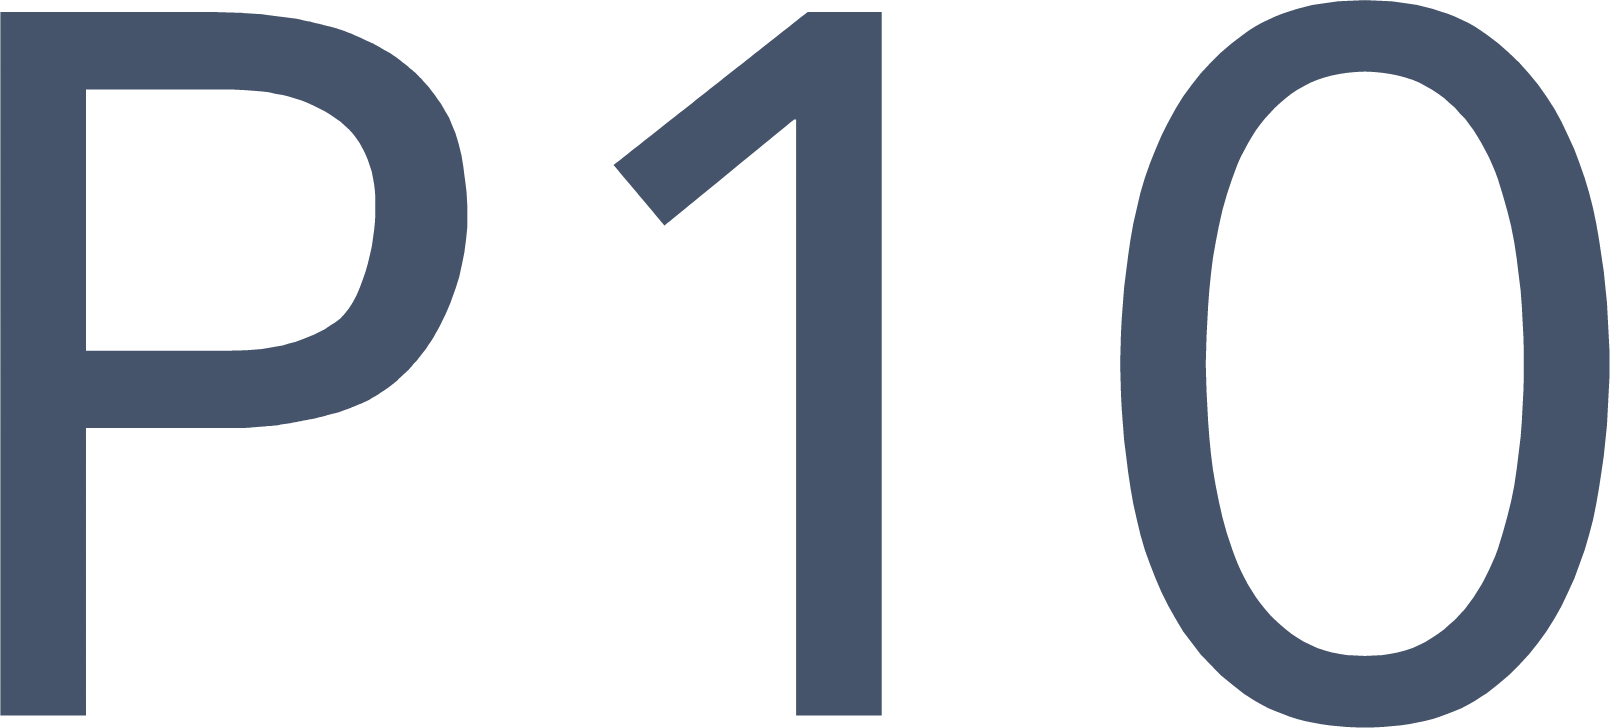 P10 logo (PNG transparent)